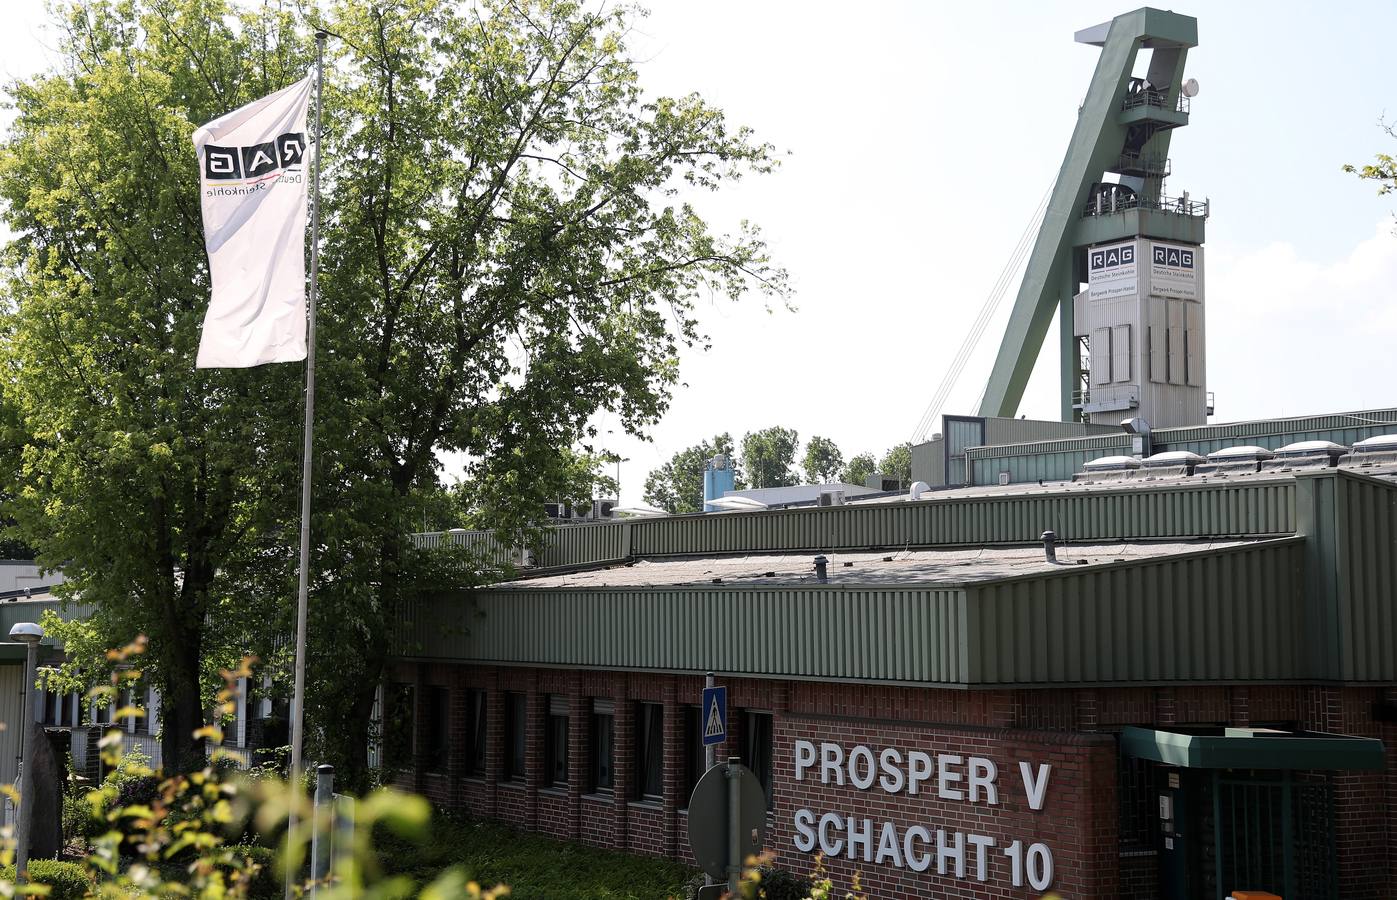 A finales de 2018 se cerrará la última mina de carbón Prosper Haniel en Bottrop (Alemania), poniendo fin a una era de más de 250 años de historia industrial de la zona del Ruhr.